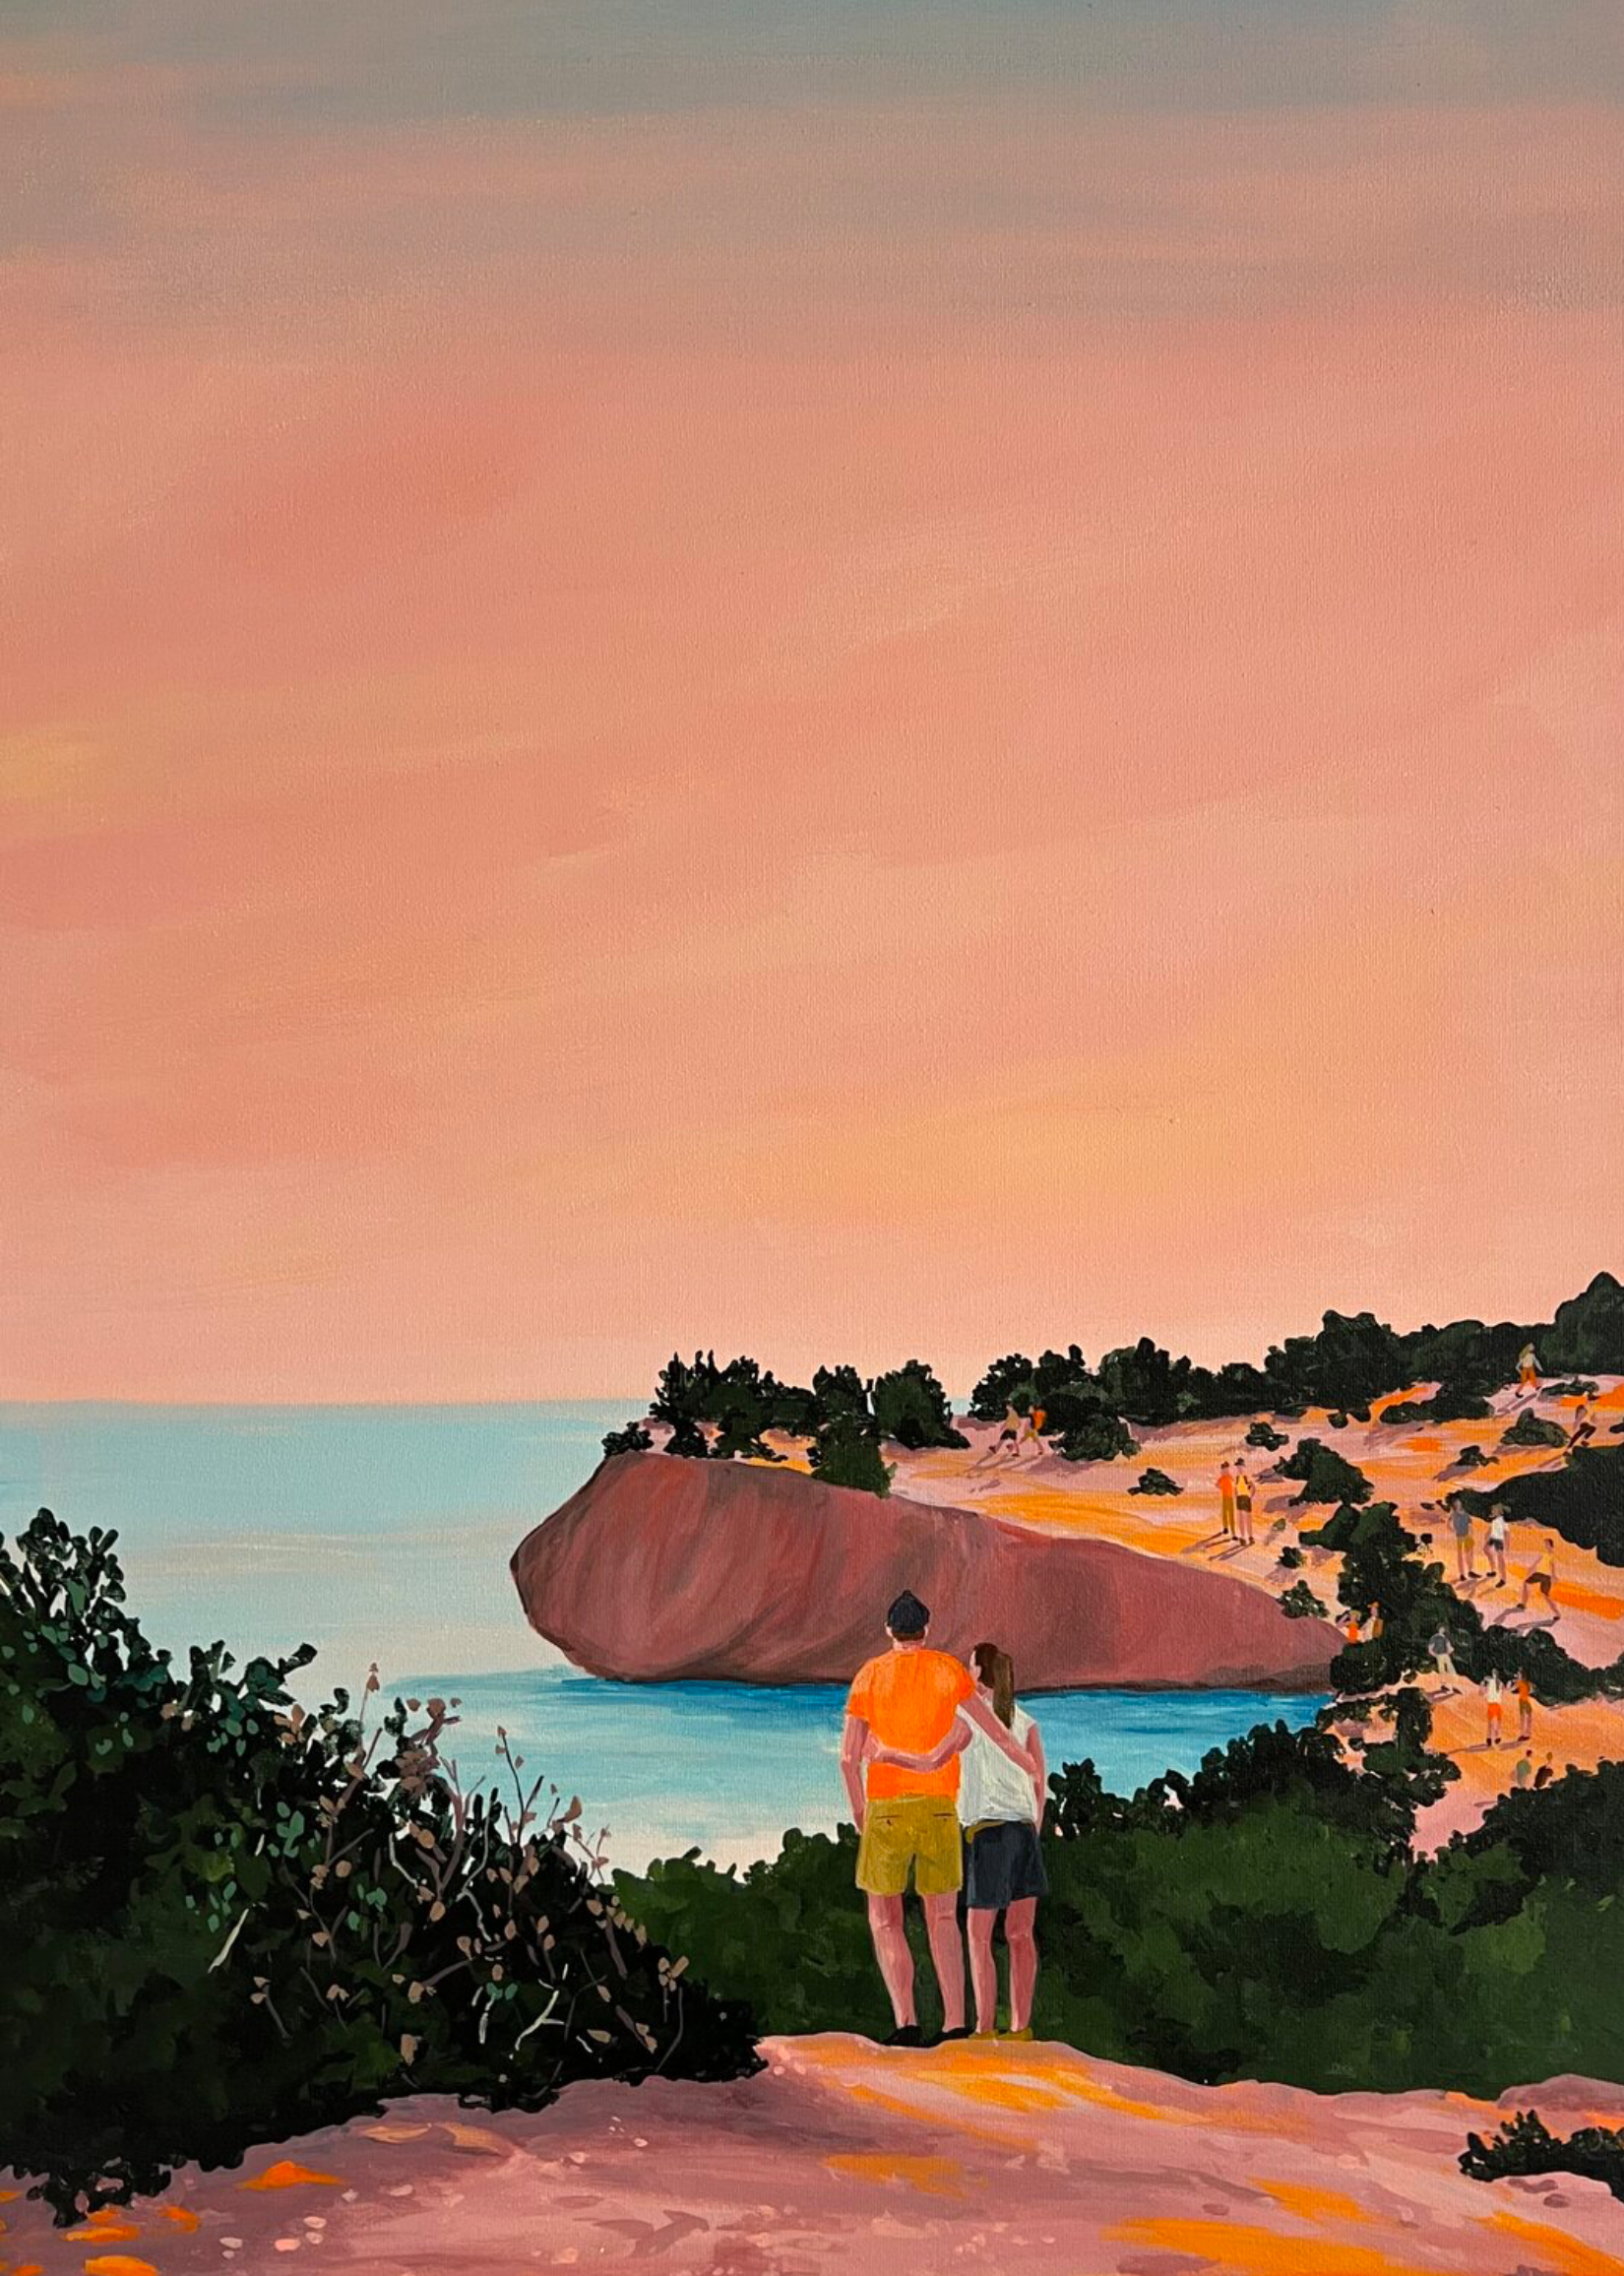 Vanessa van Meerhaeghe ist eine in Brüssel ansässige Malerin. Ihr Gemälde "Meet me halfway" zeigt eine atemberaubende Abendszene entlang der Küste, gemalt in wunderschönen Pfirsichtönen